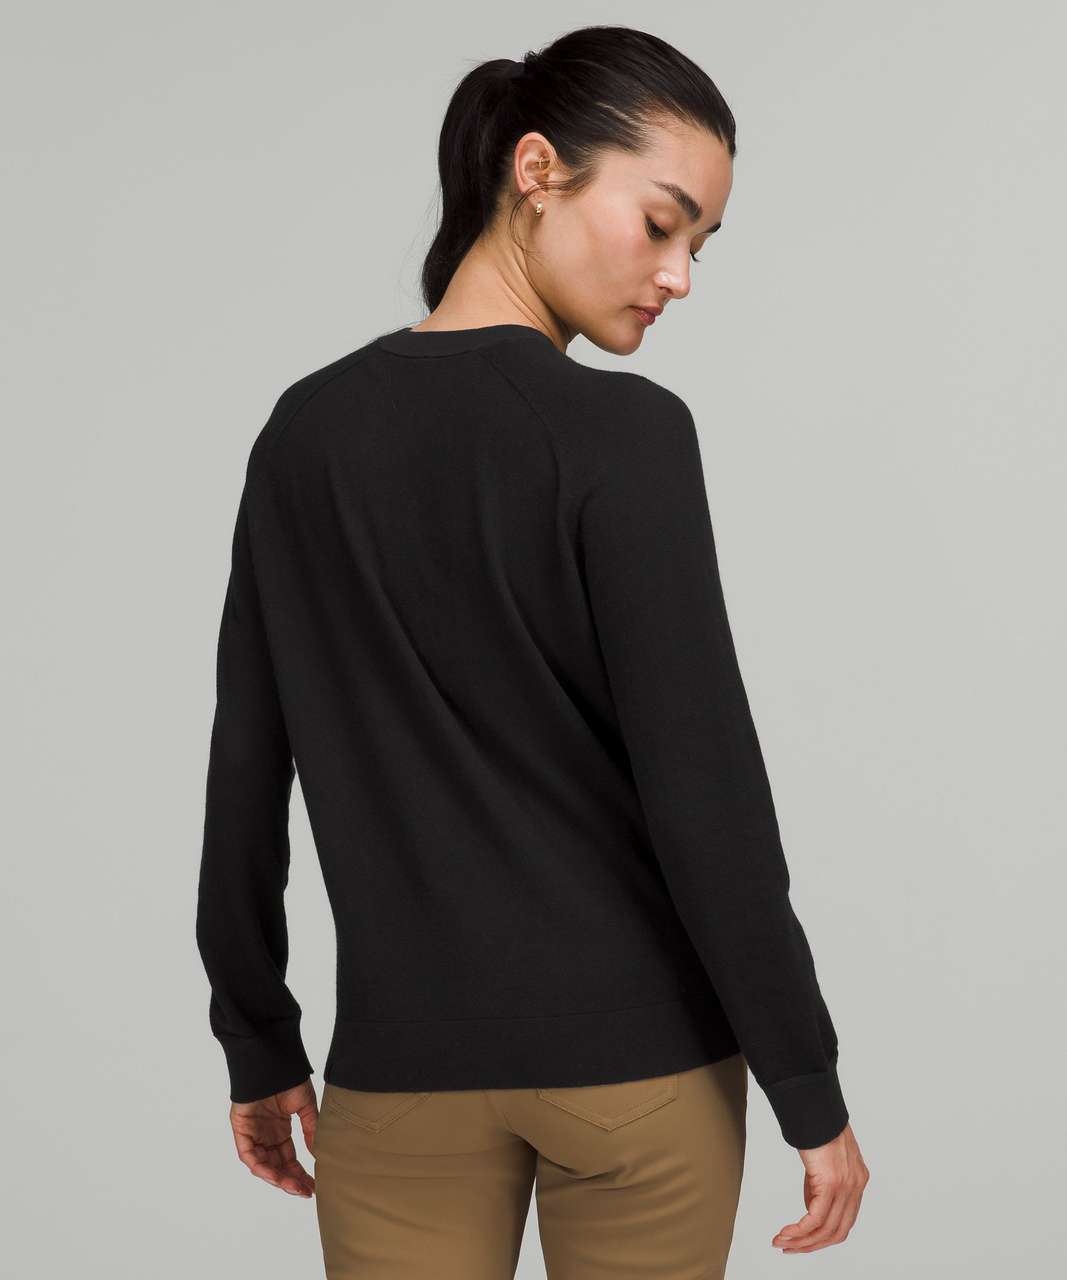 Lululemon Silk-Blend Crewneck Sweater - Heathered Soft Denim